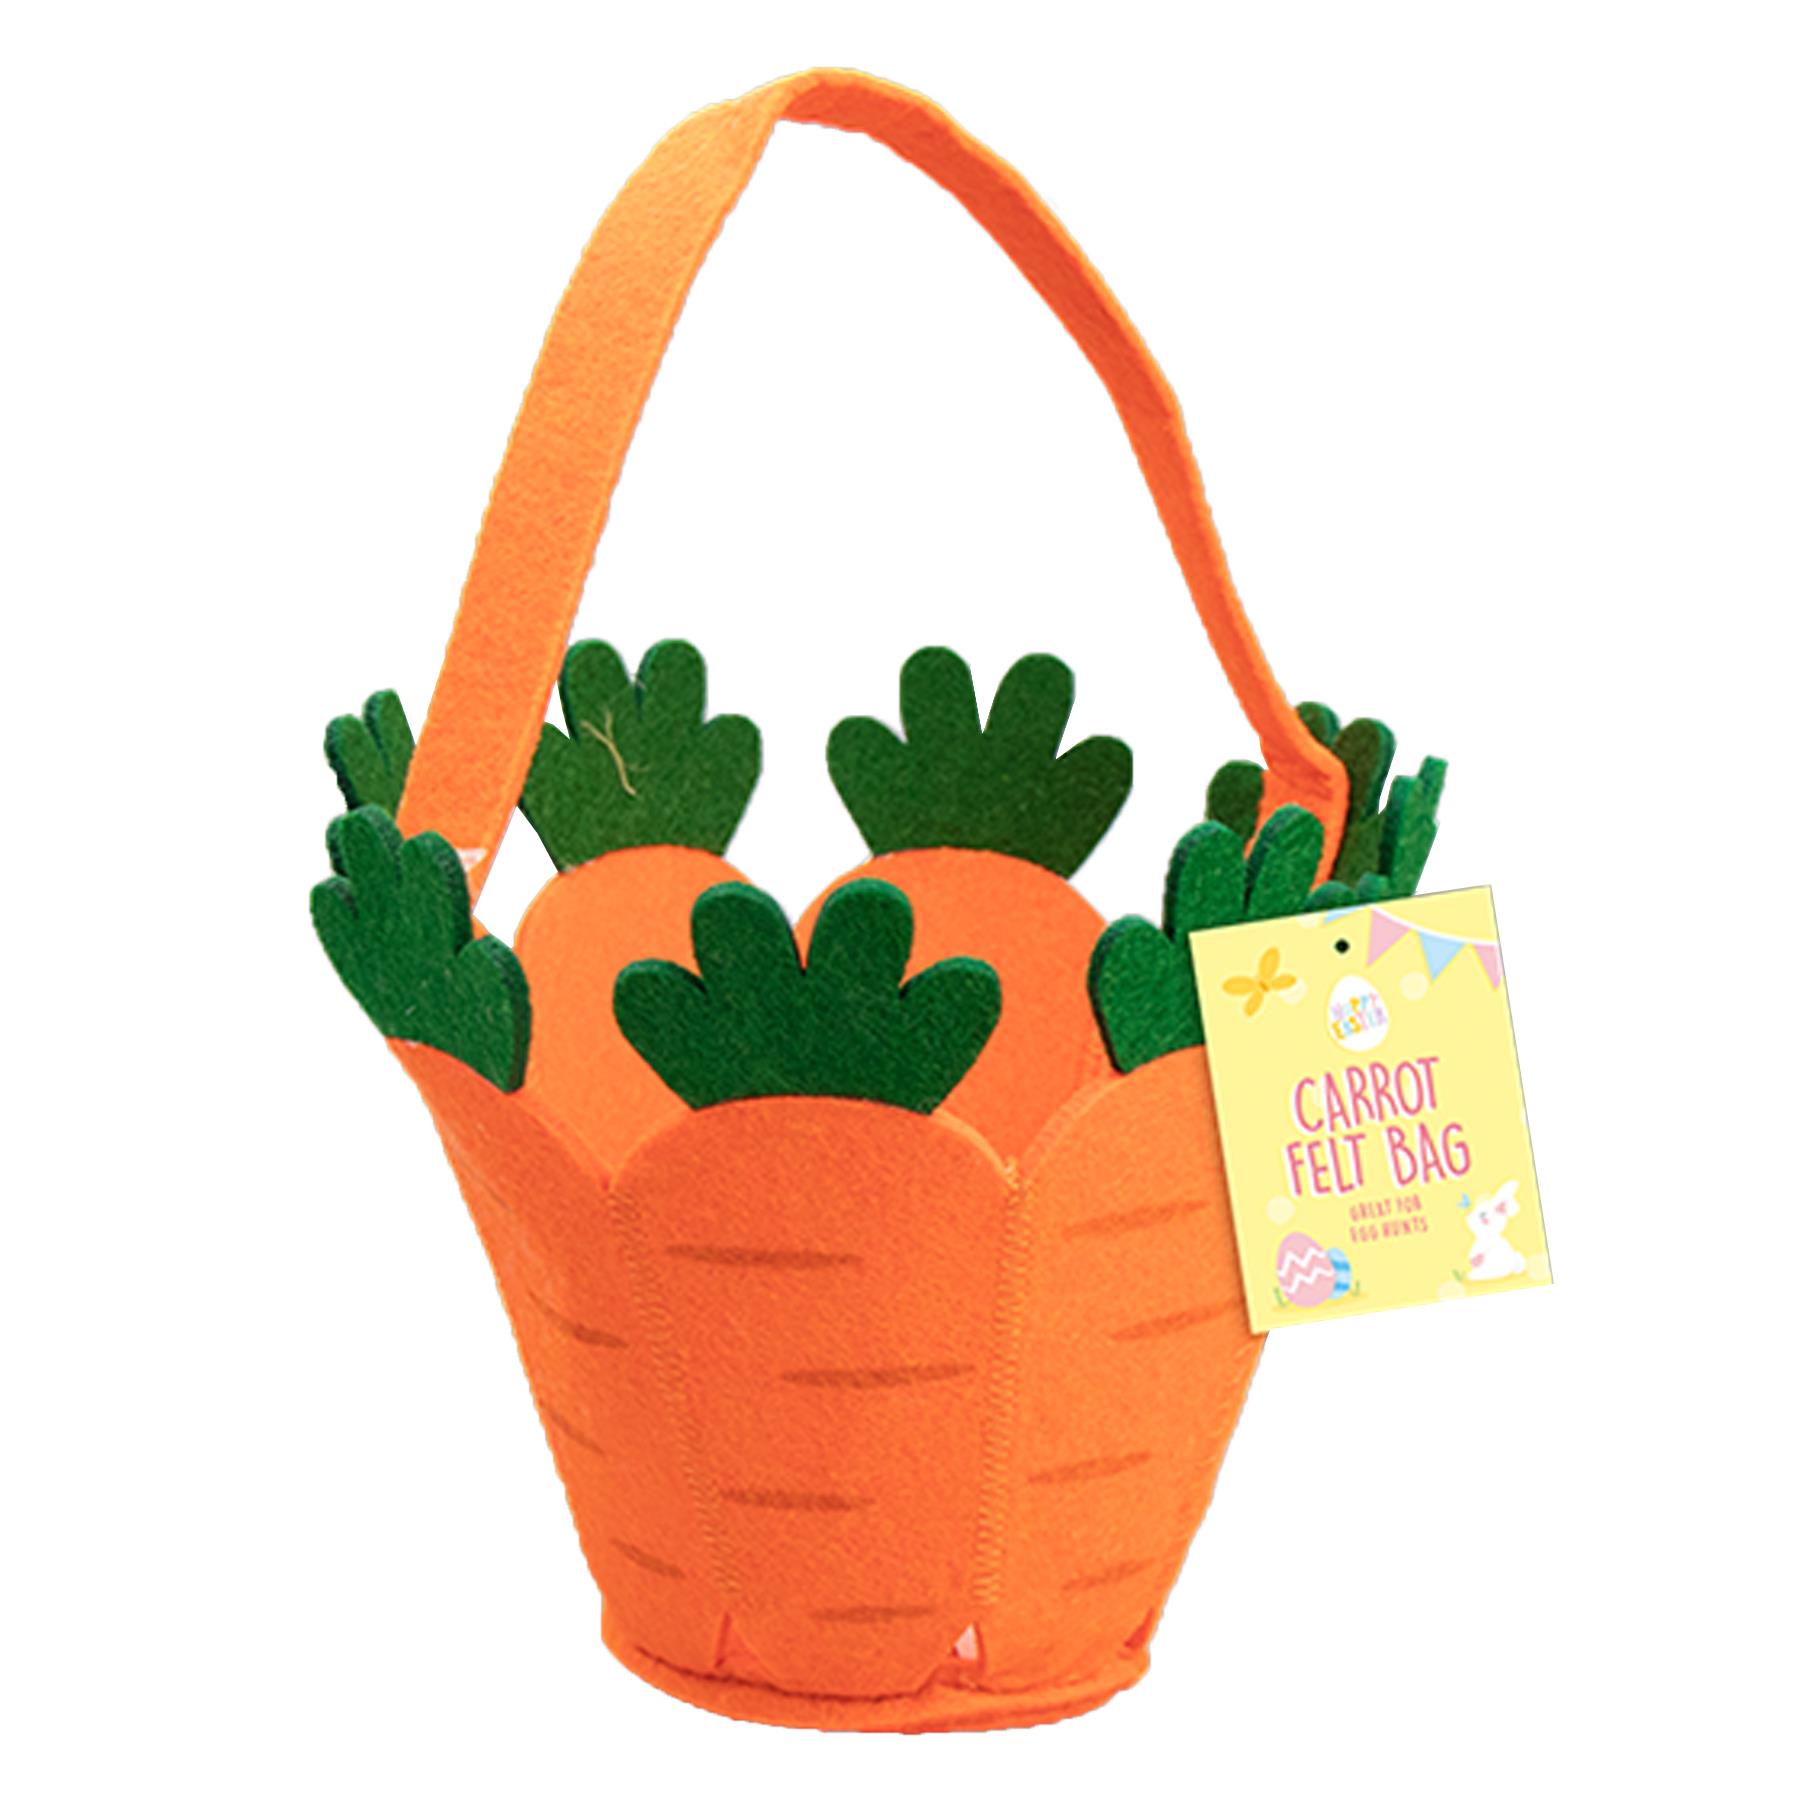 Easter Baskets, Buckets, Egg Hunt Accessories - Felt Carrot Bucket